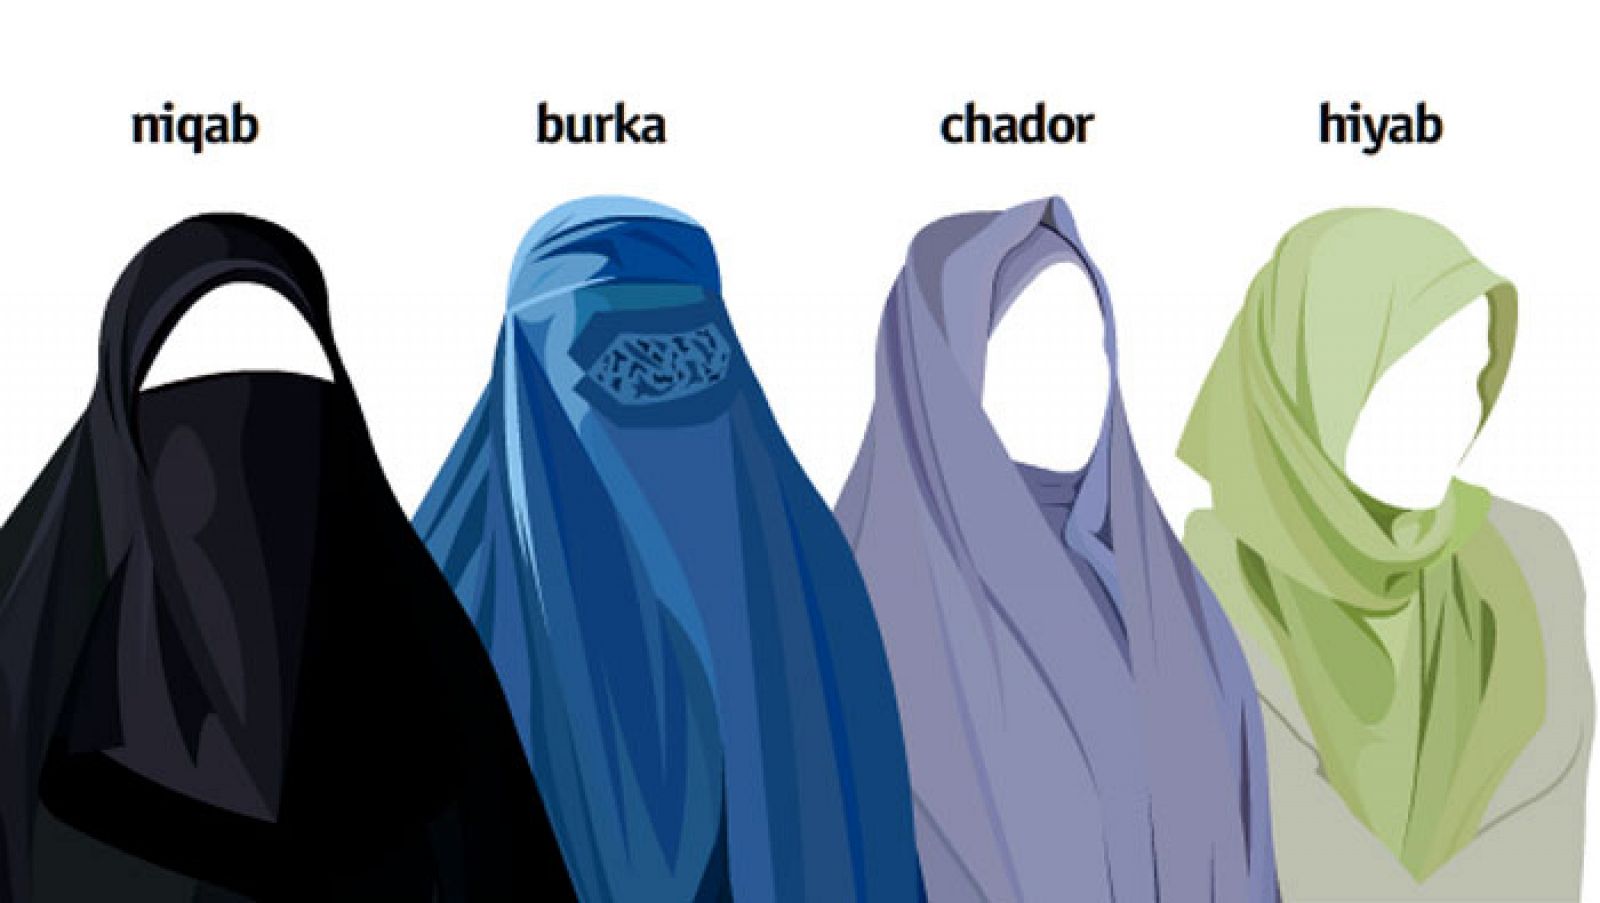 Prendas tradicionales de la mujer musulmana.